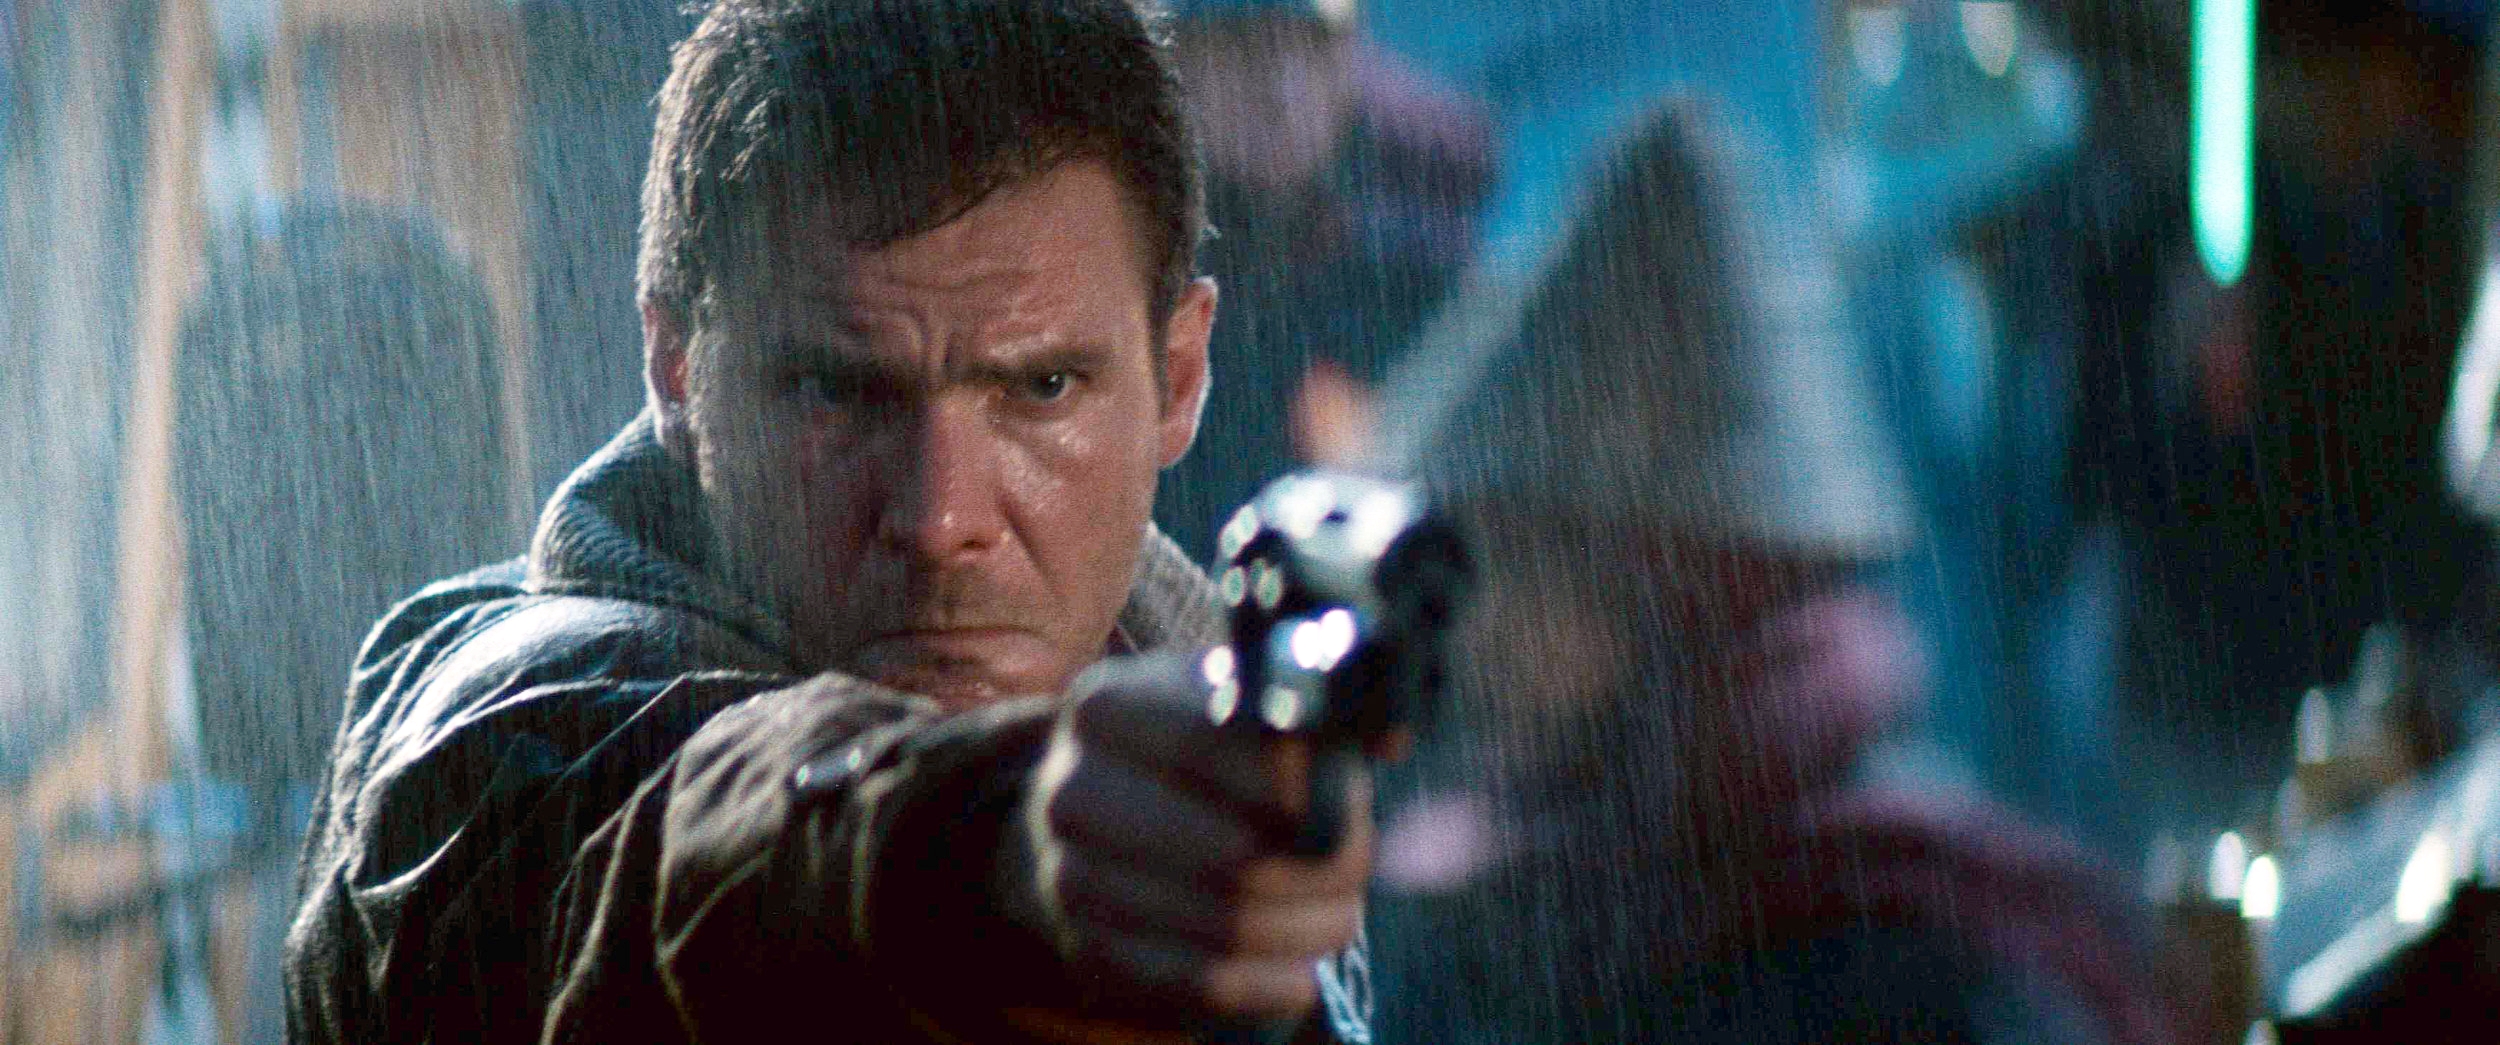 Rick Deckard aims a gun in Blade Runner (1982).